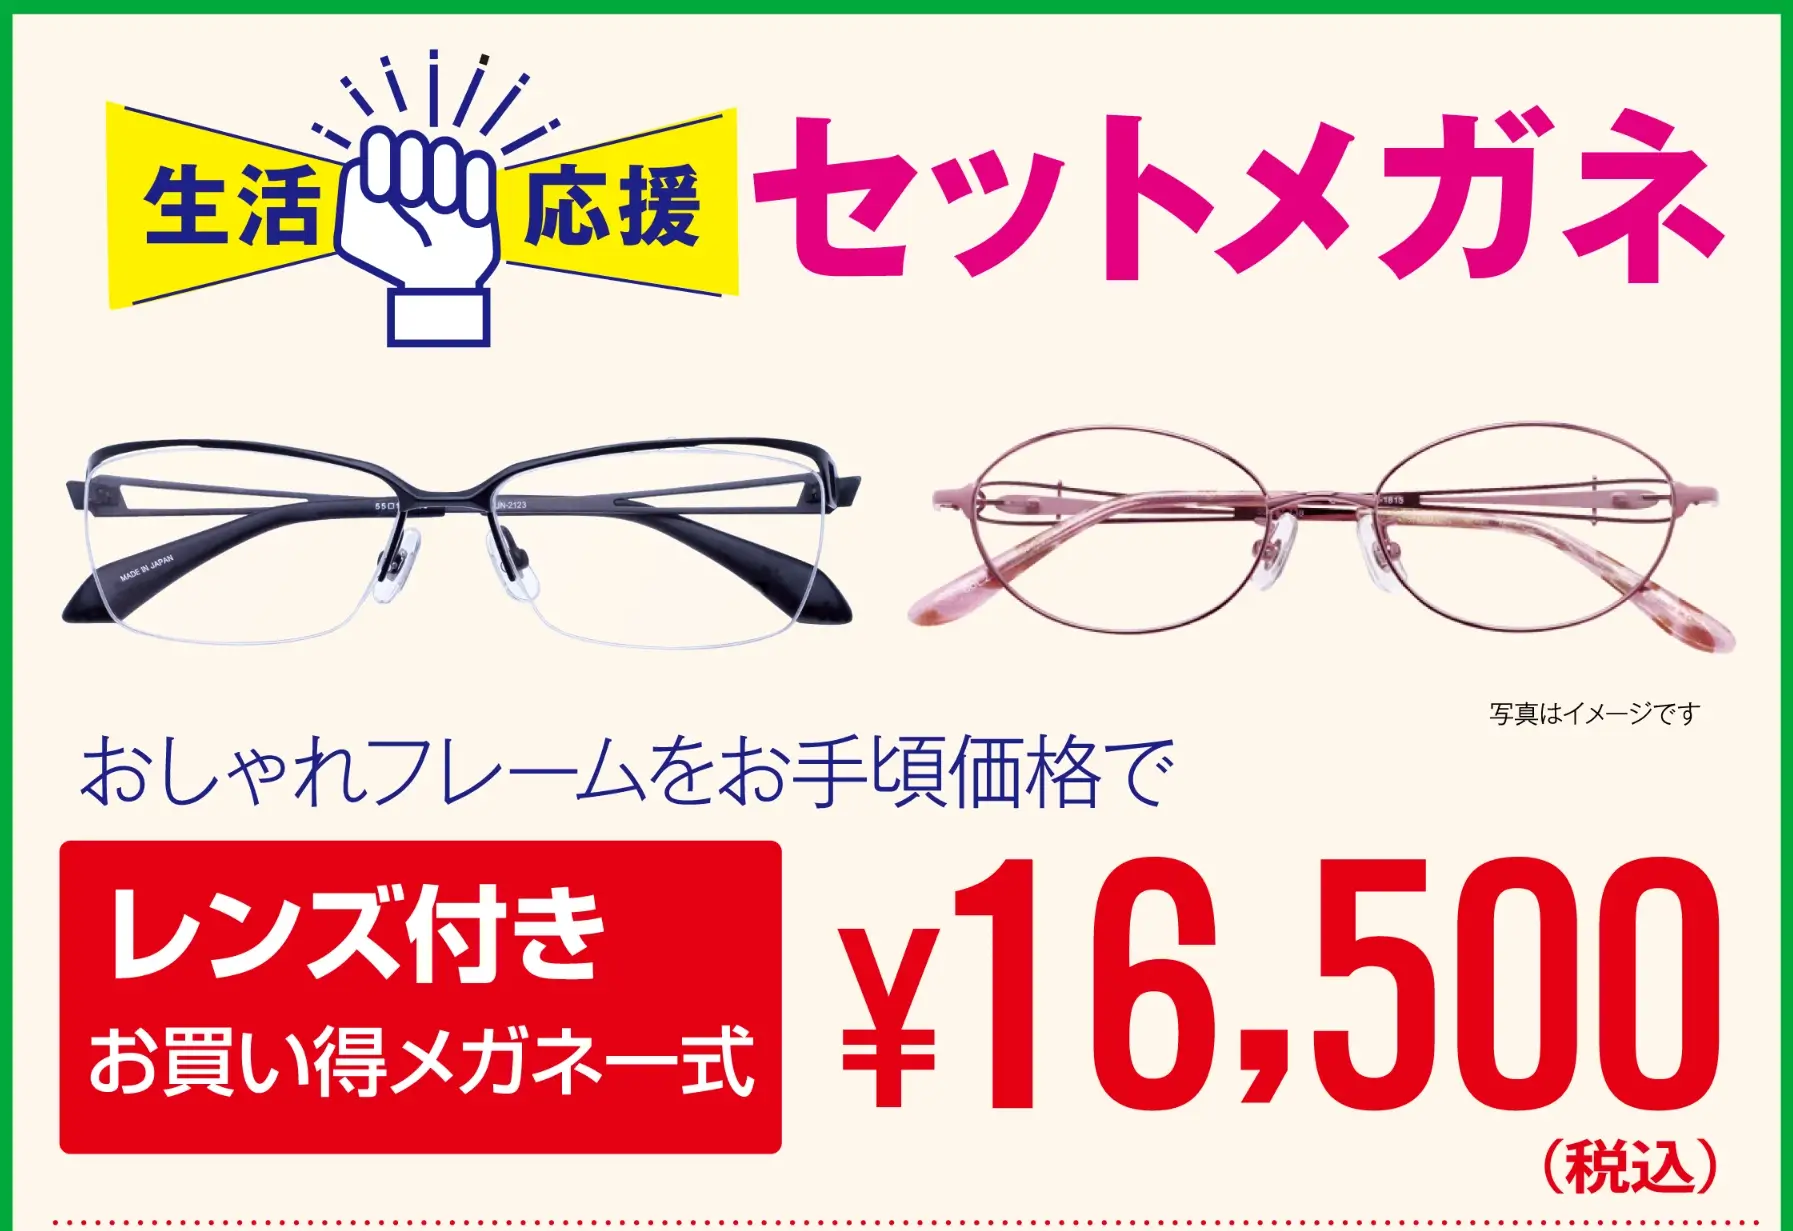 生活応援メガネセット 16500円